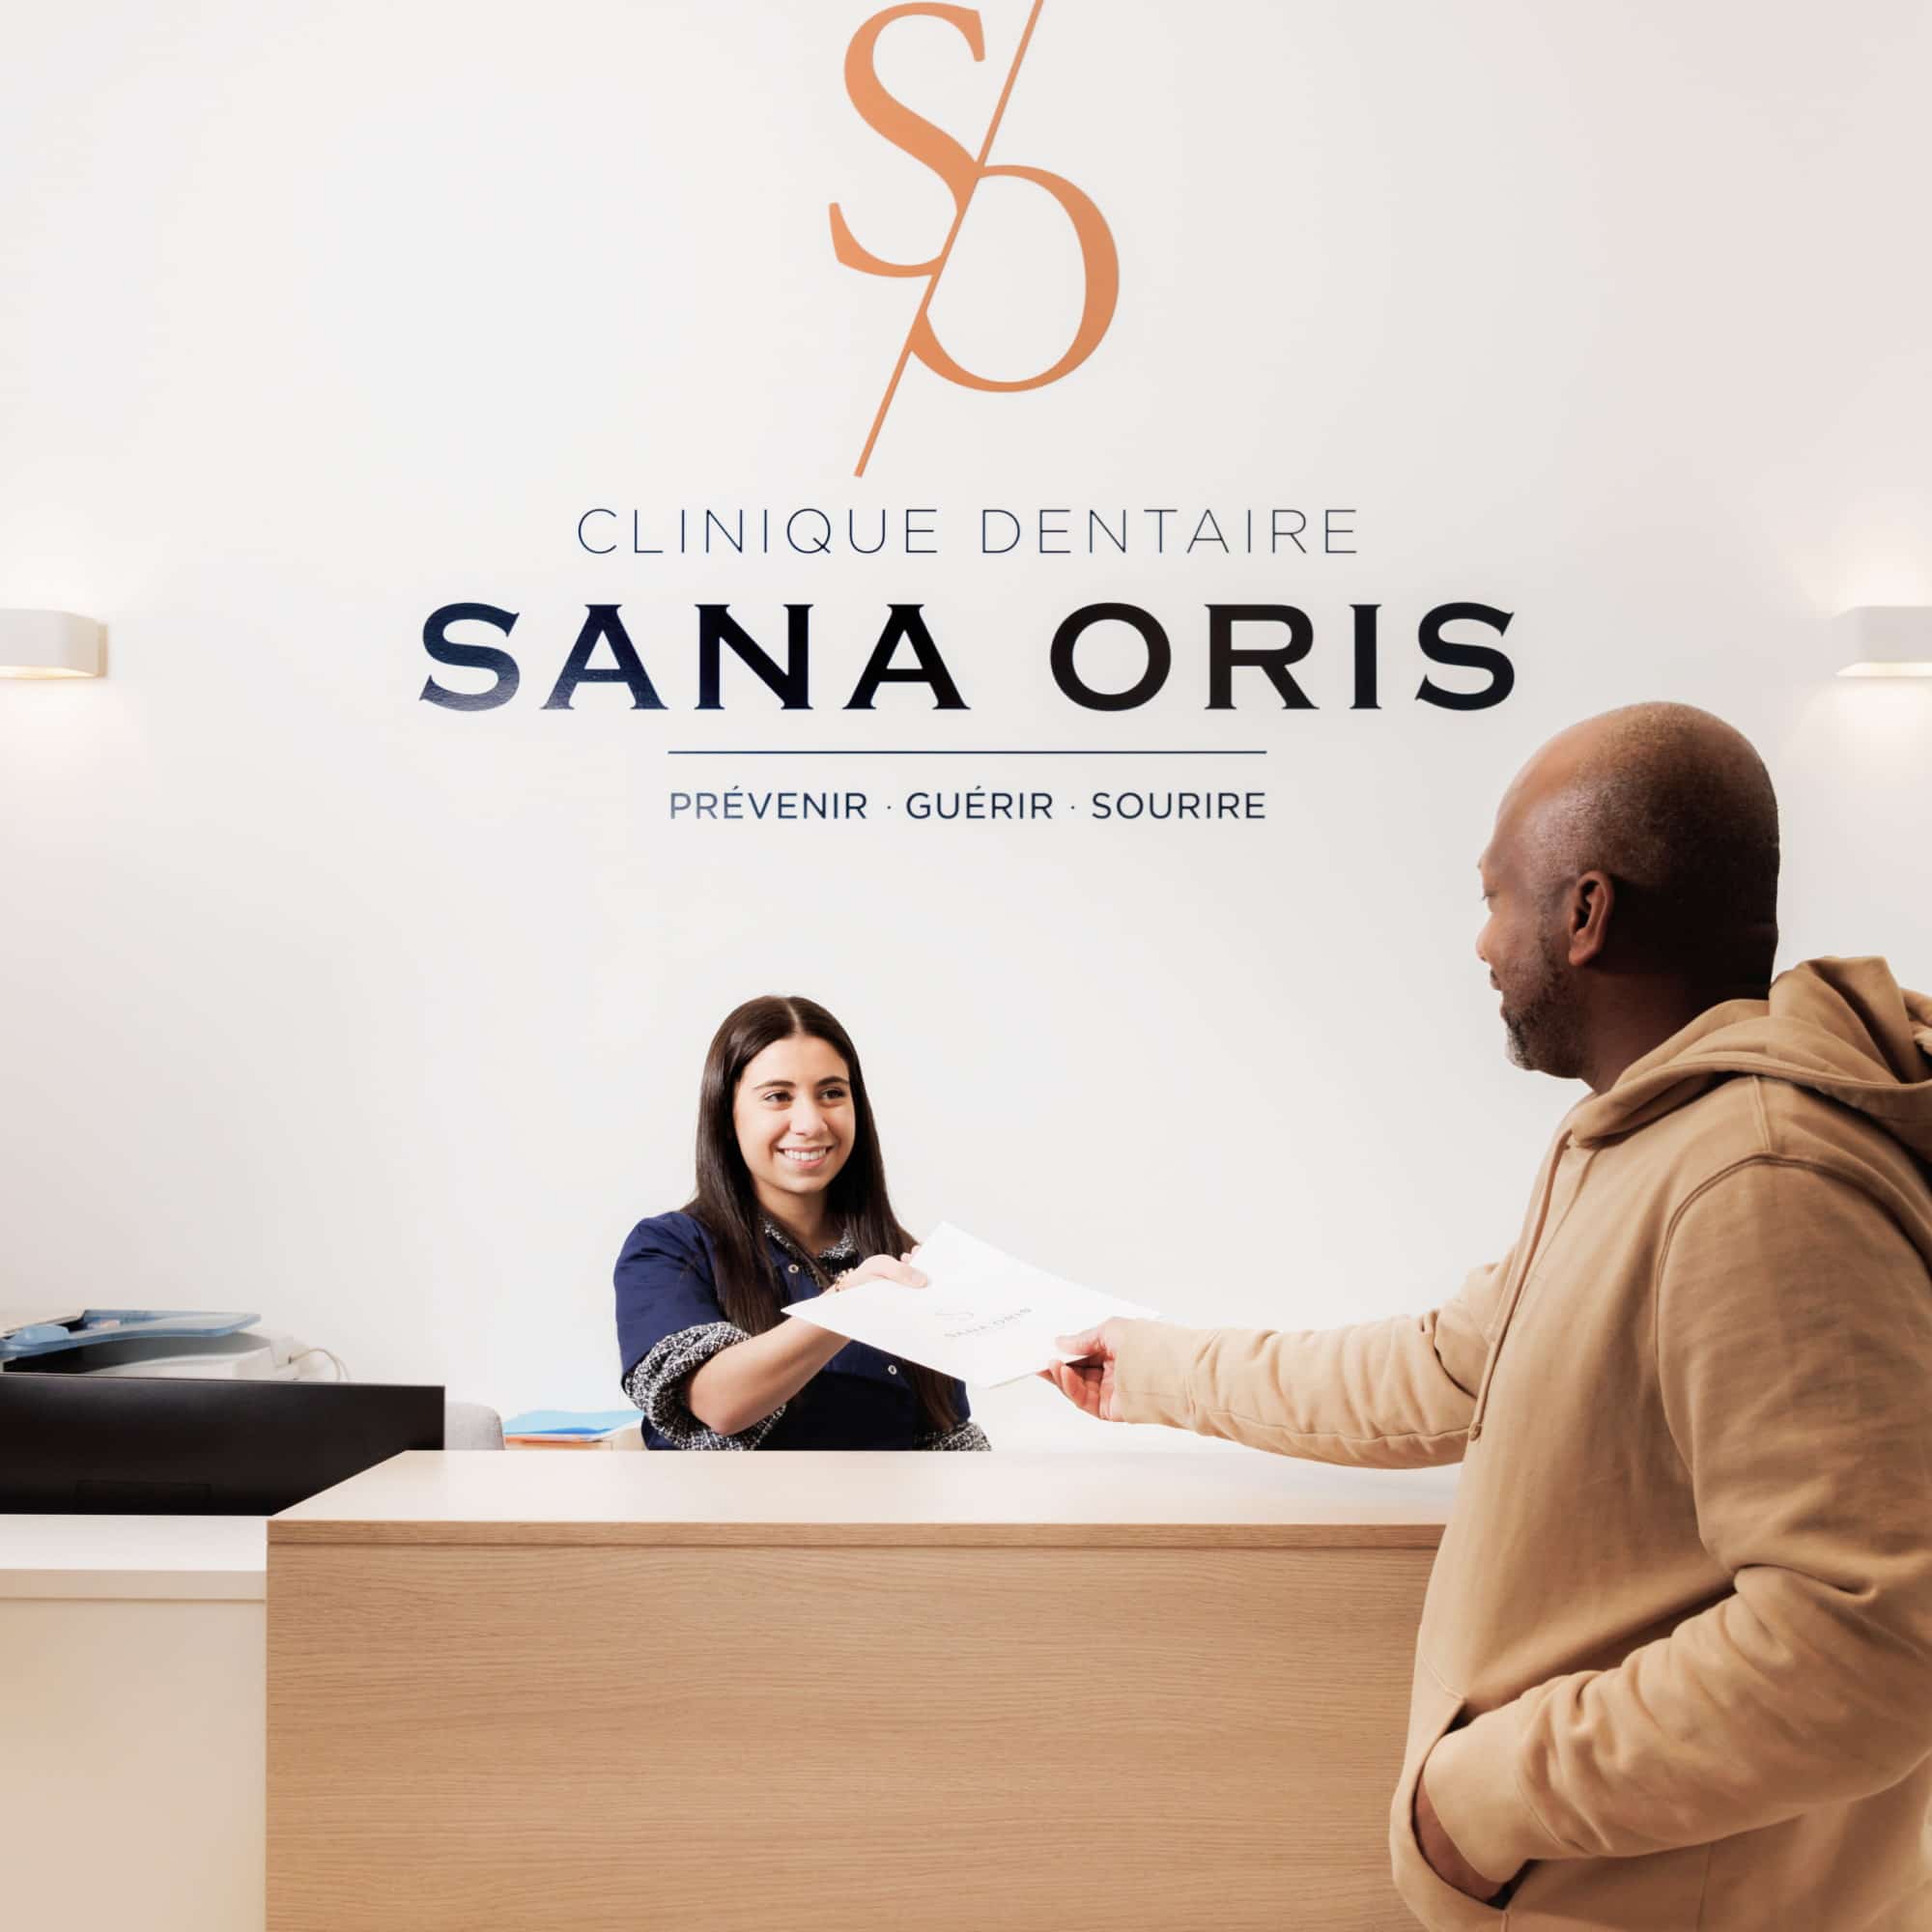 Parcours patient | Chirurgie, orthodontie et endodontie | Clinique dentaire Sana Oris Paris